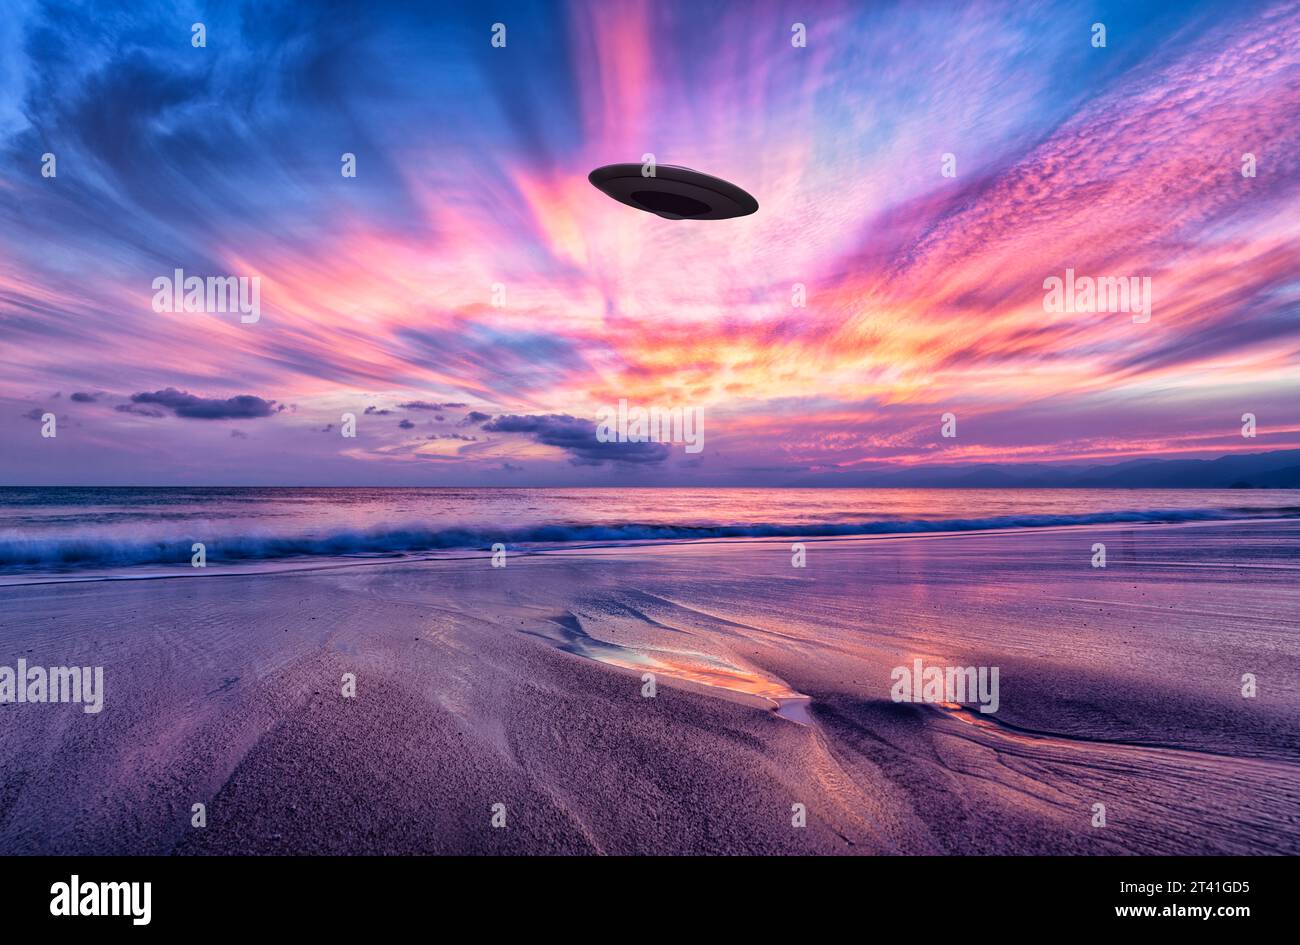 Une soucoupe d'objets volants non identifiés plane dans le ciel surréaliste coloré Banque D'Images